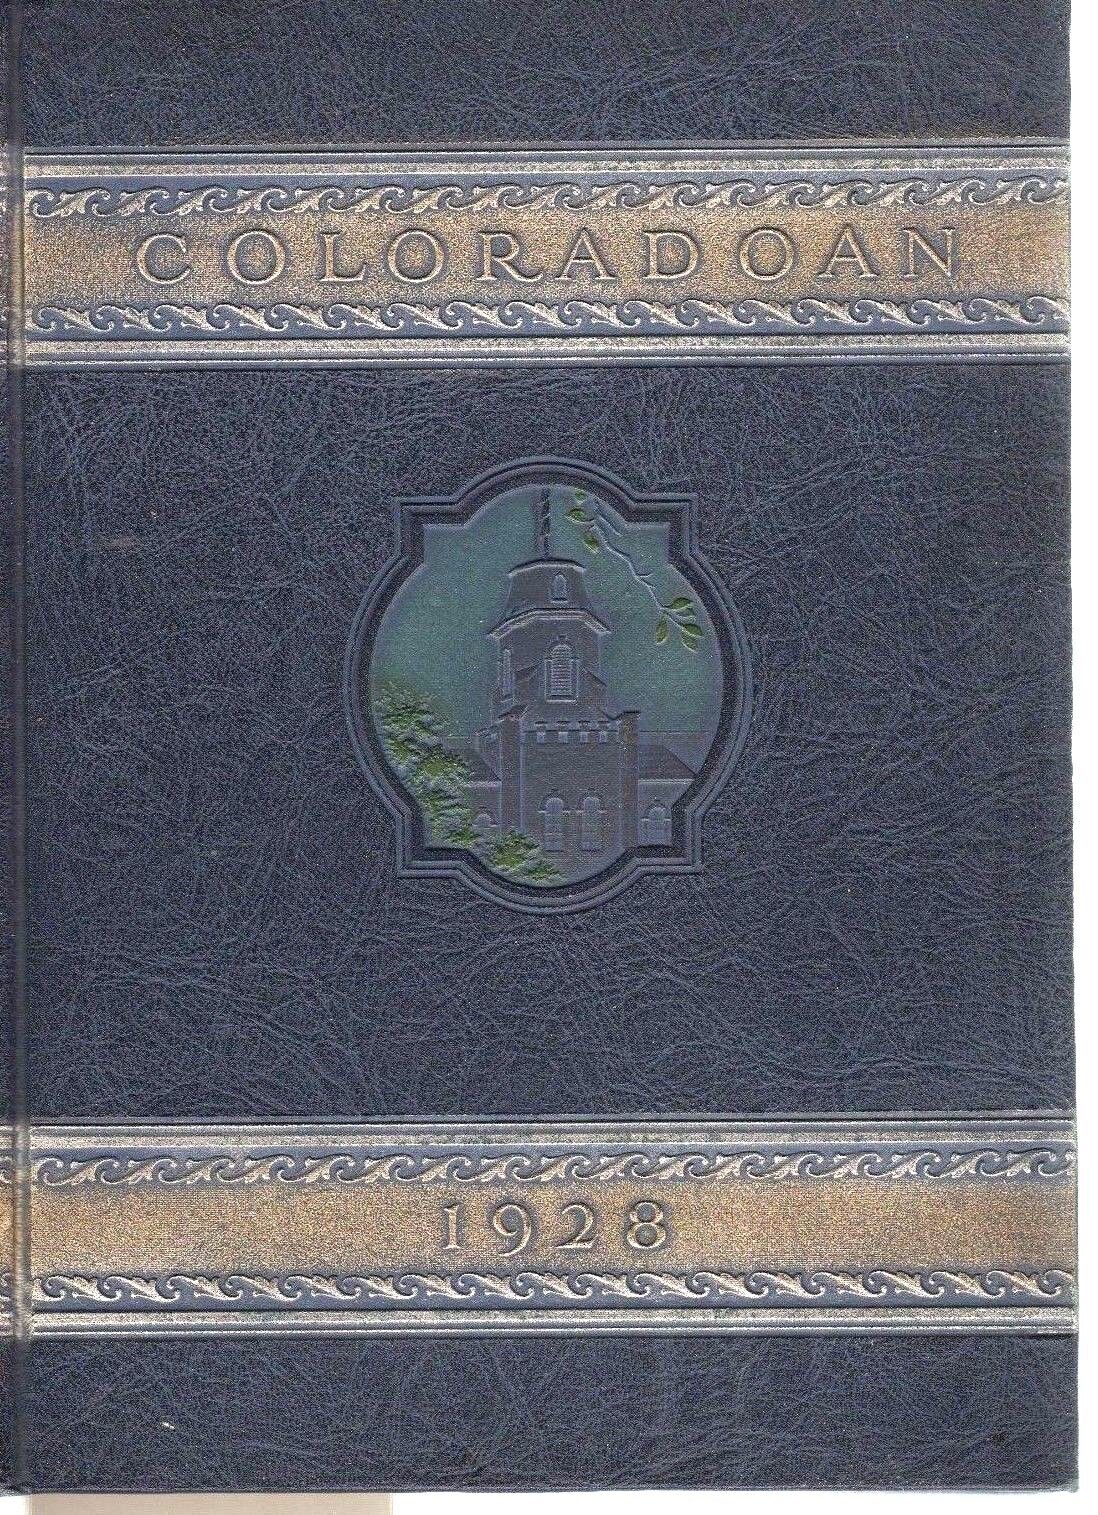 Original 1928 University Colorado Yearbook-Boulder-Coloradoan-CU Buffs 